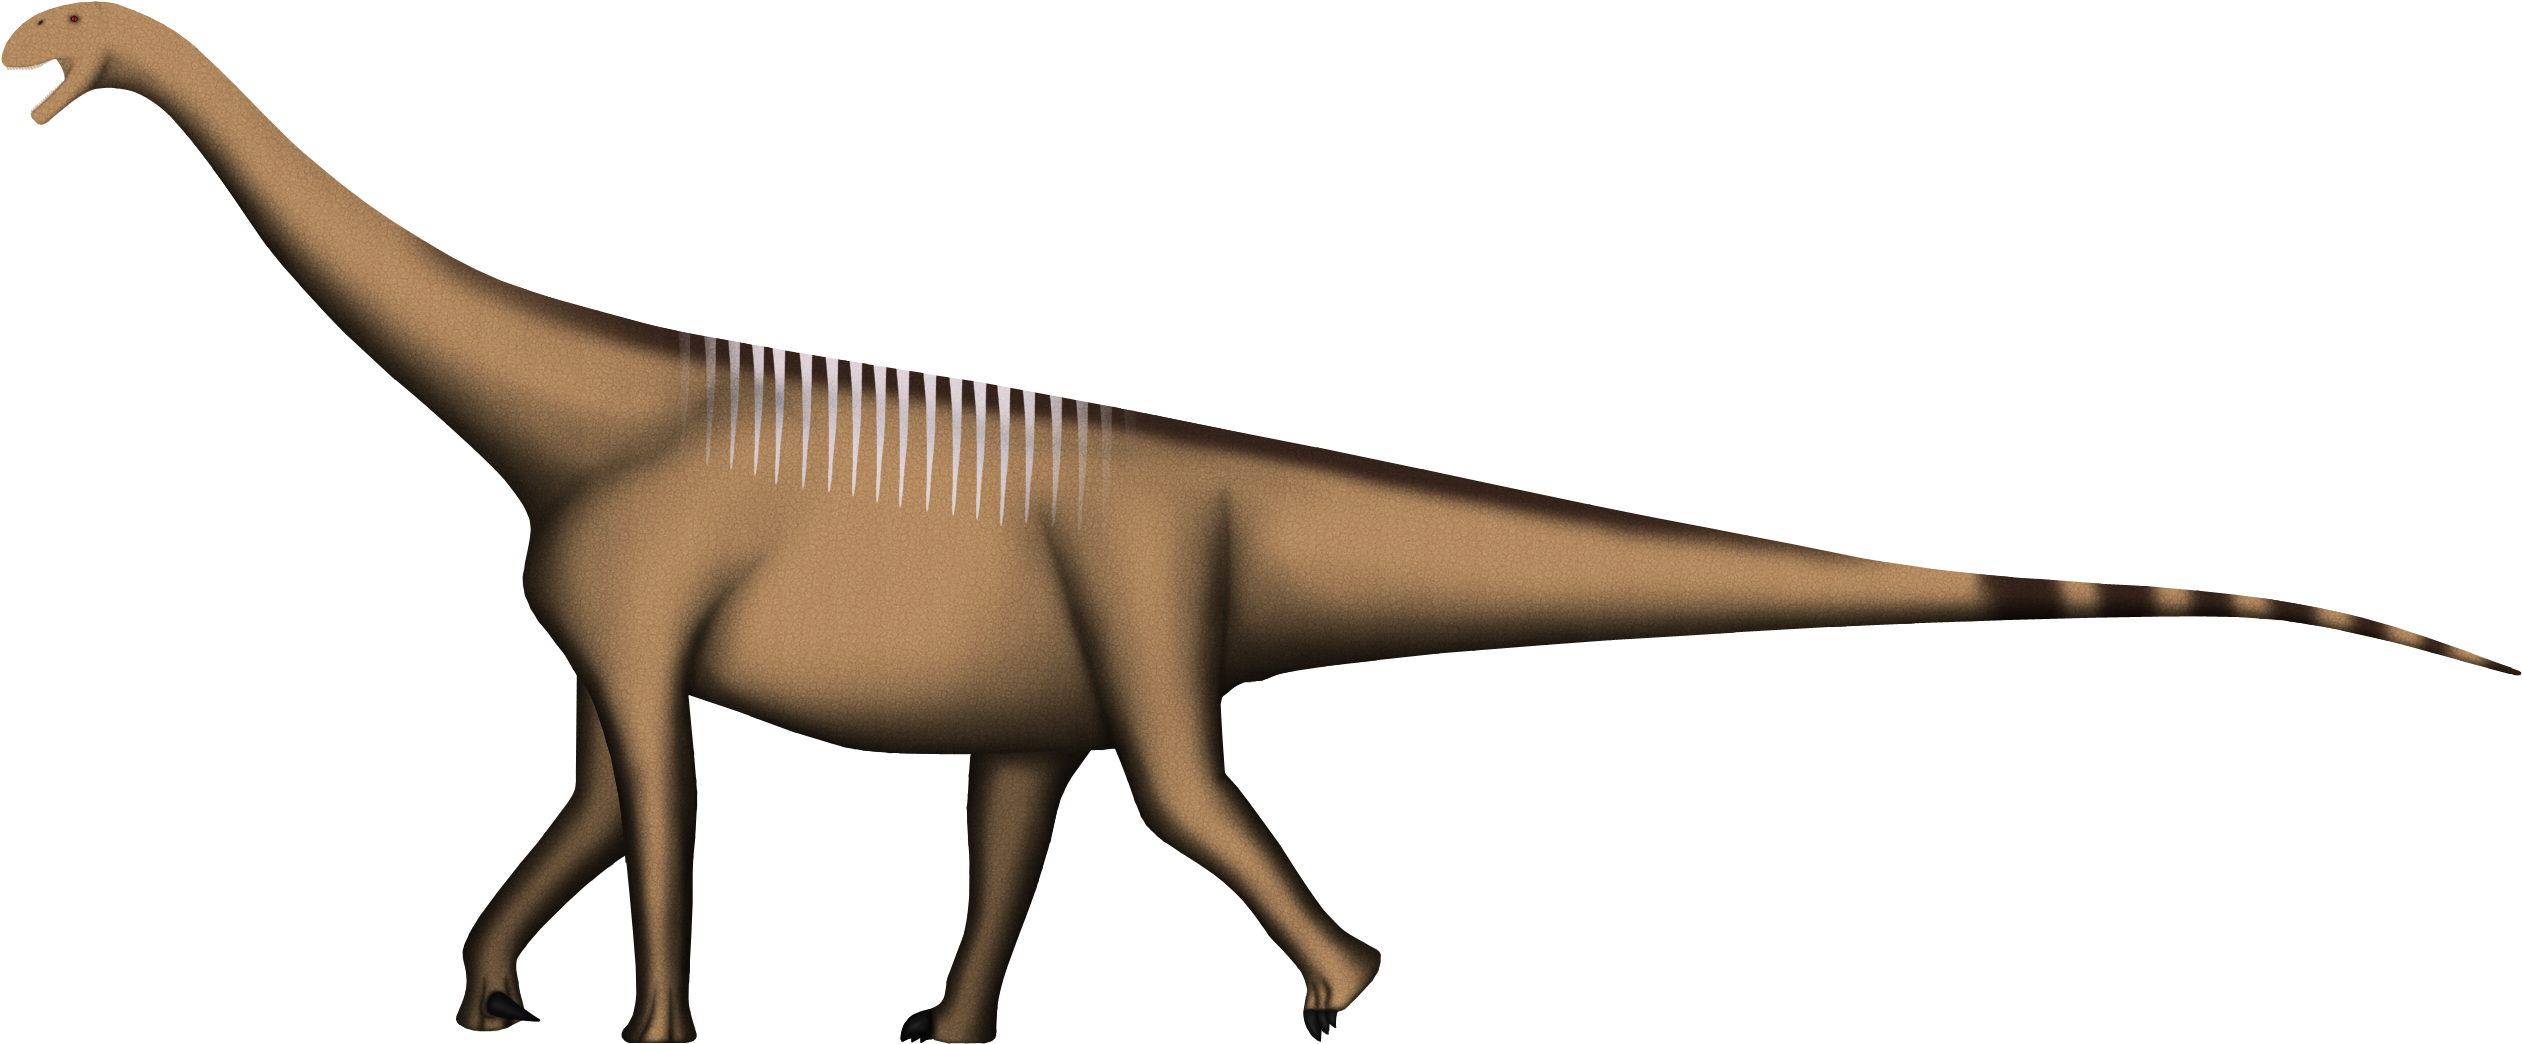 Turiasaurus riodevensis